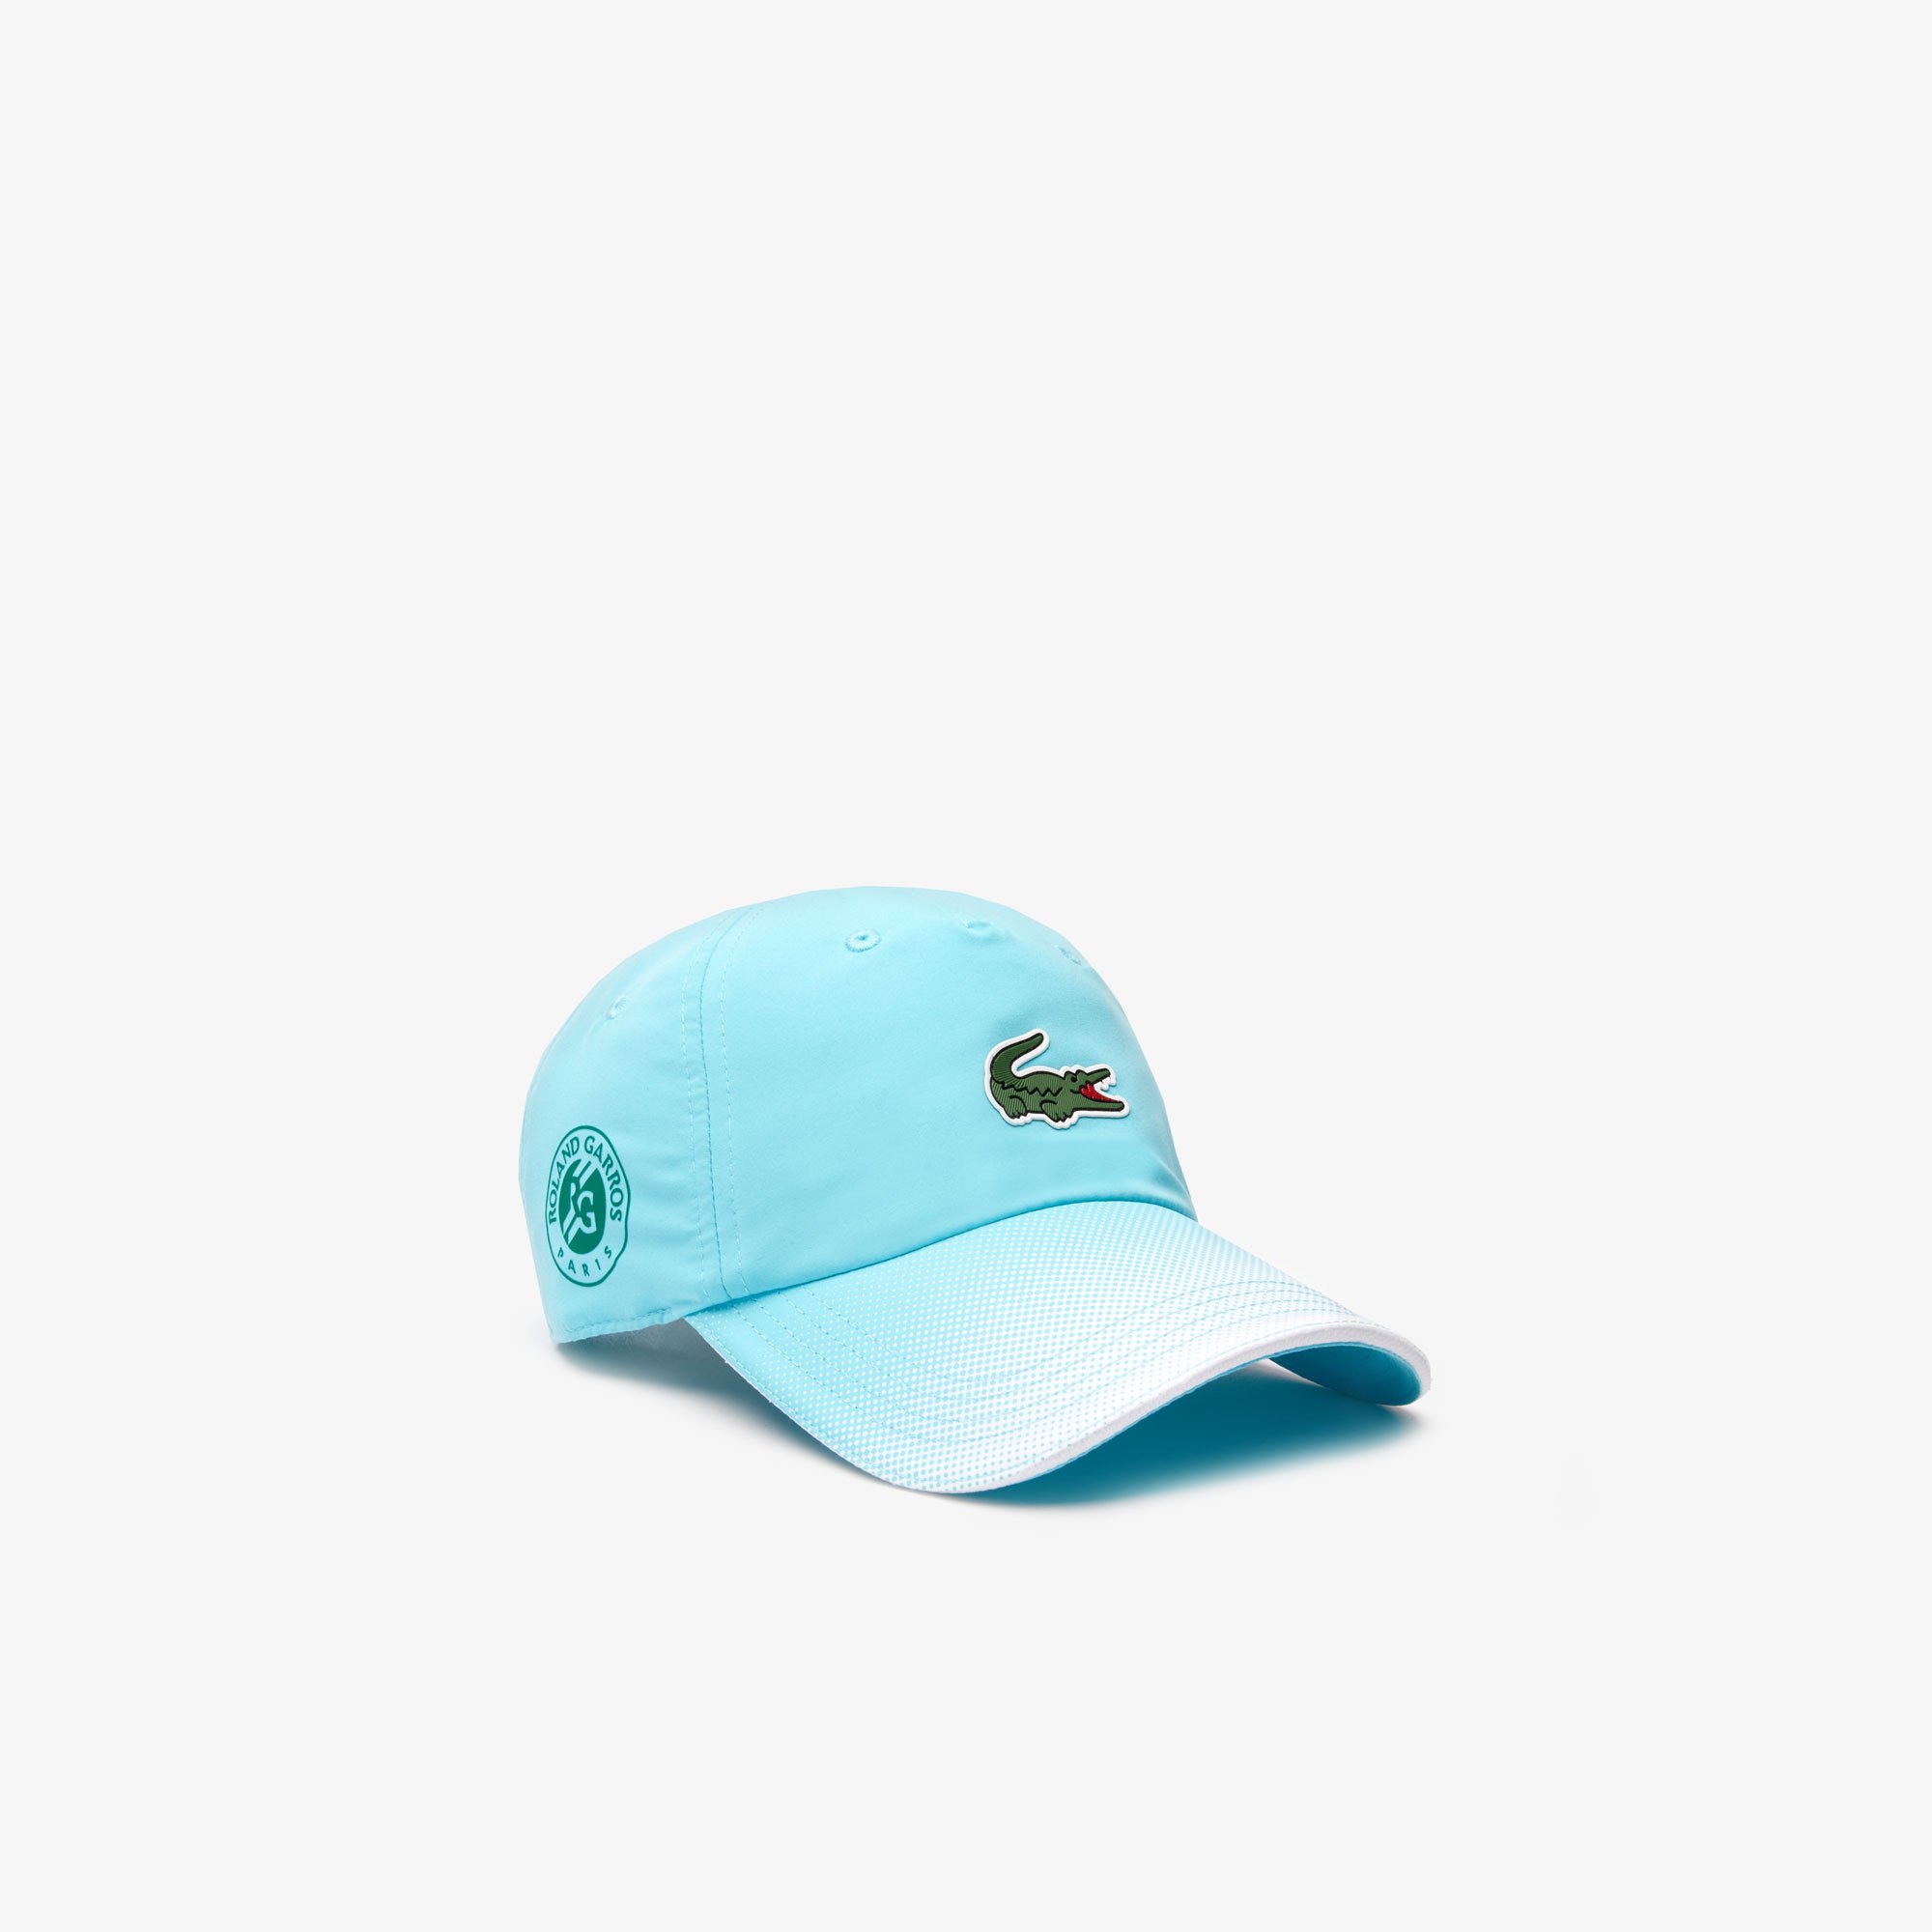 blue lacoste hat